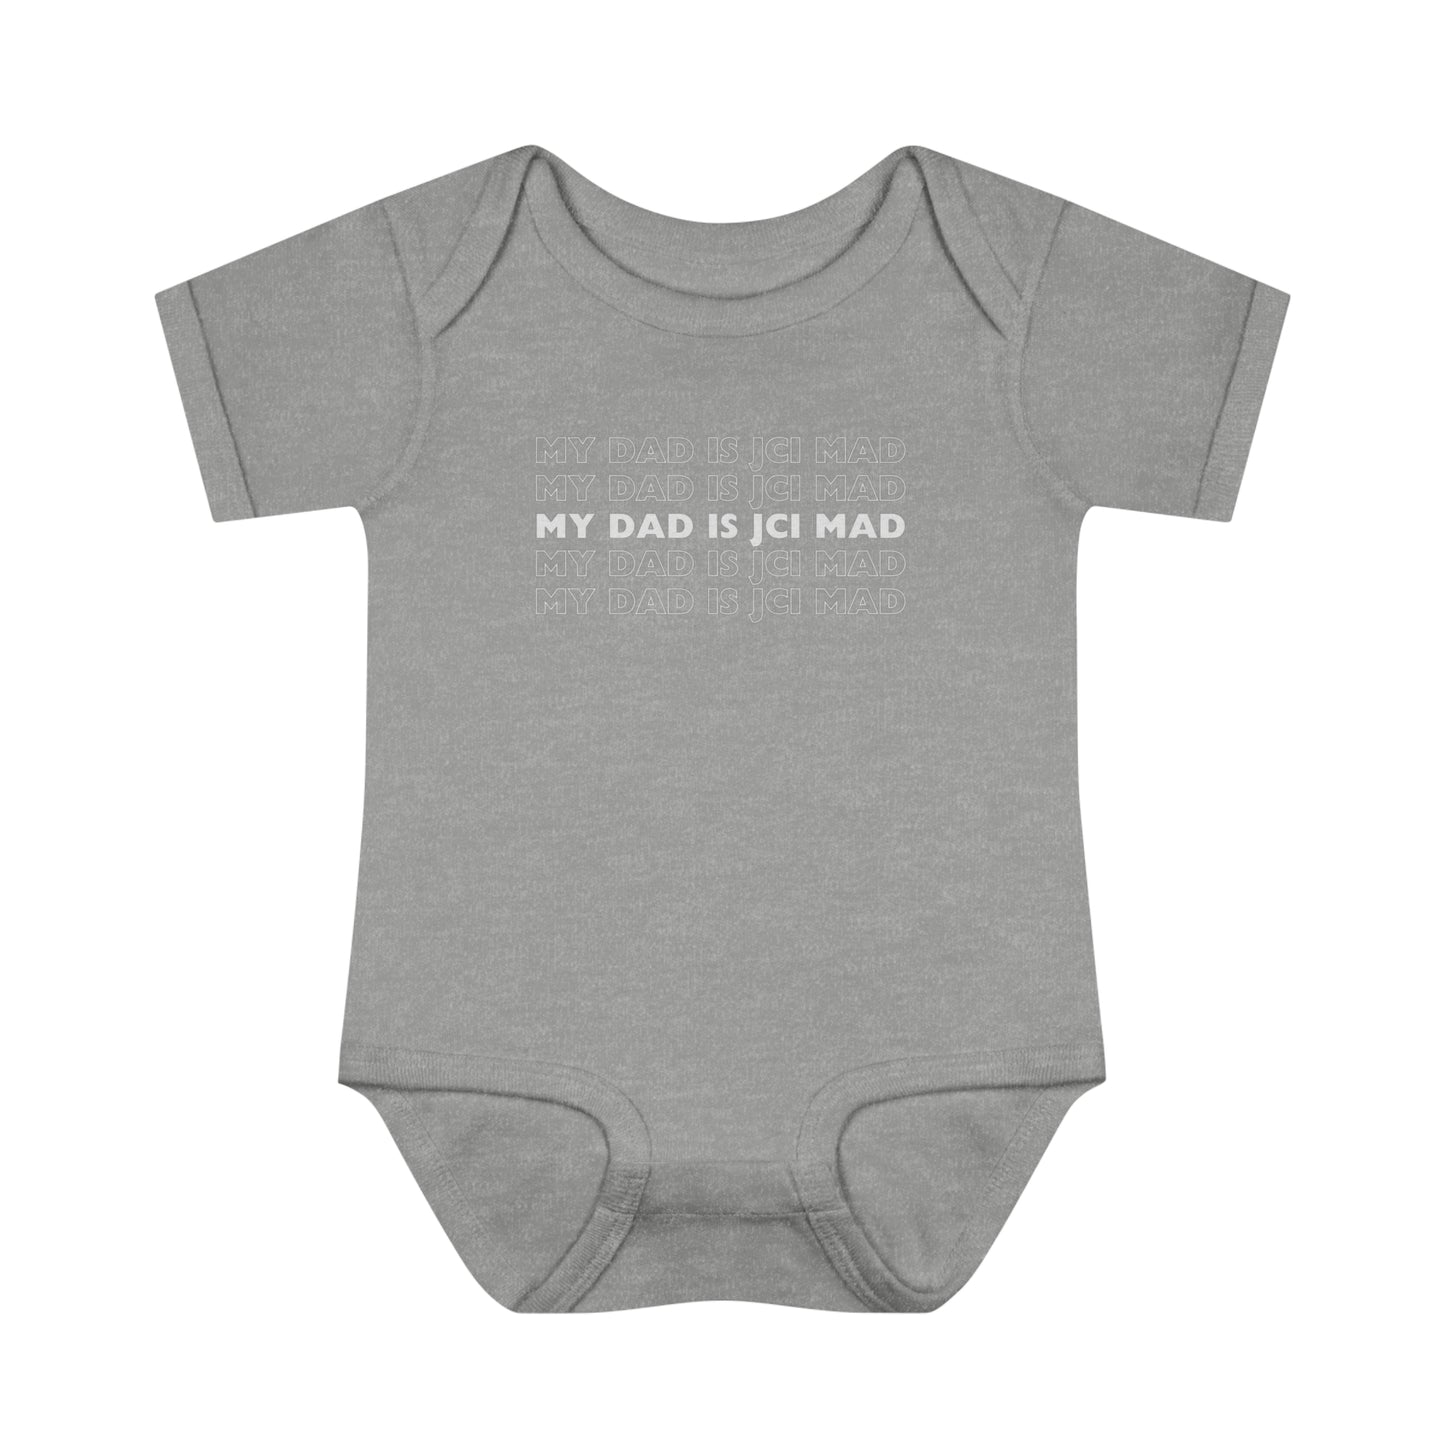 Infant Baby Rib Bodysuit (Black)